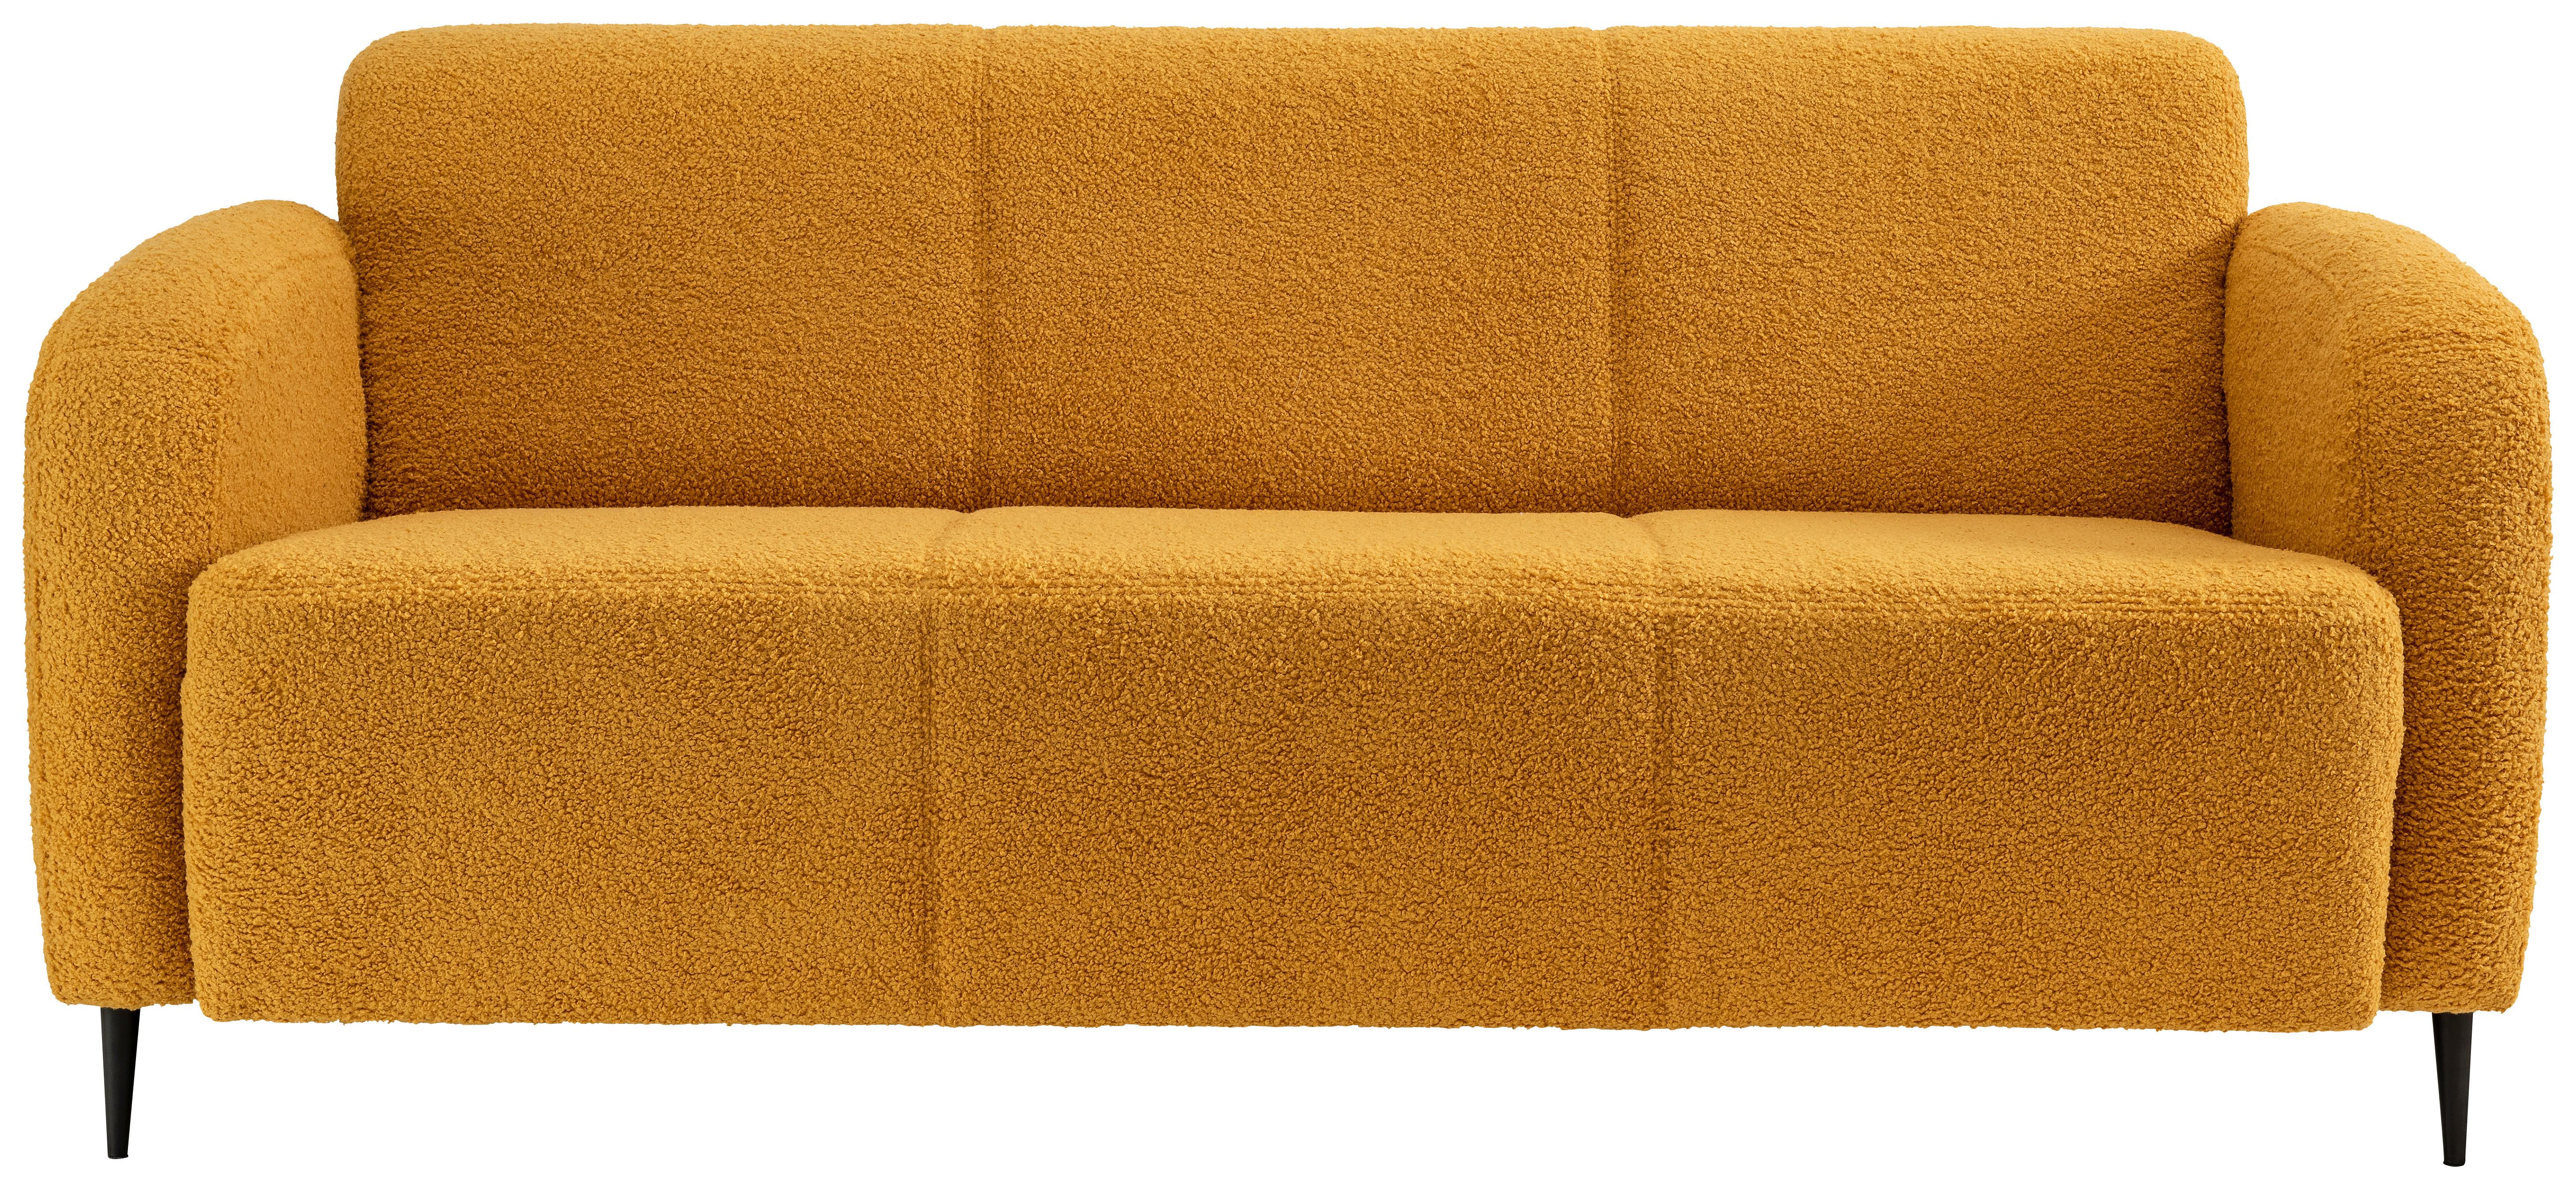 3-Sitzer-Sofa Marone Gelb Teddystoff - Gelb/Schwarz, MODERN, Textil (185/76/90cm) - Livetastic